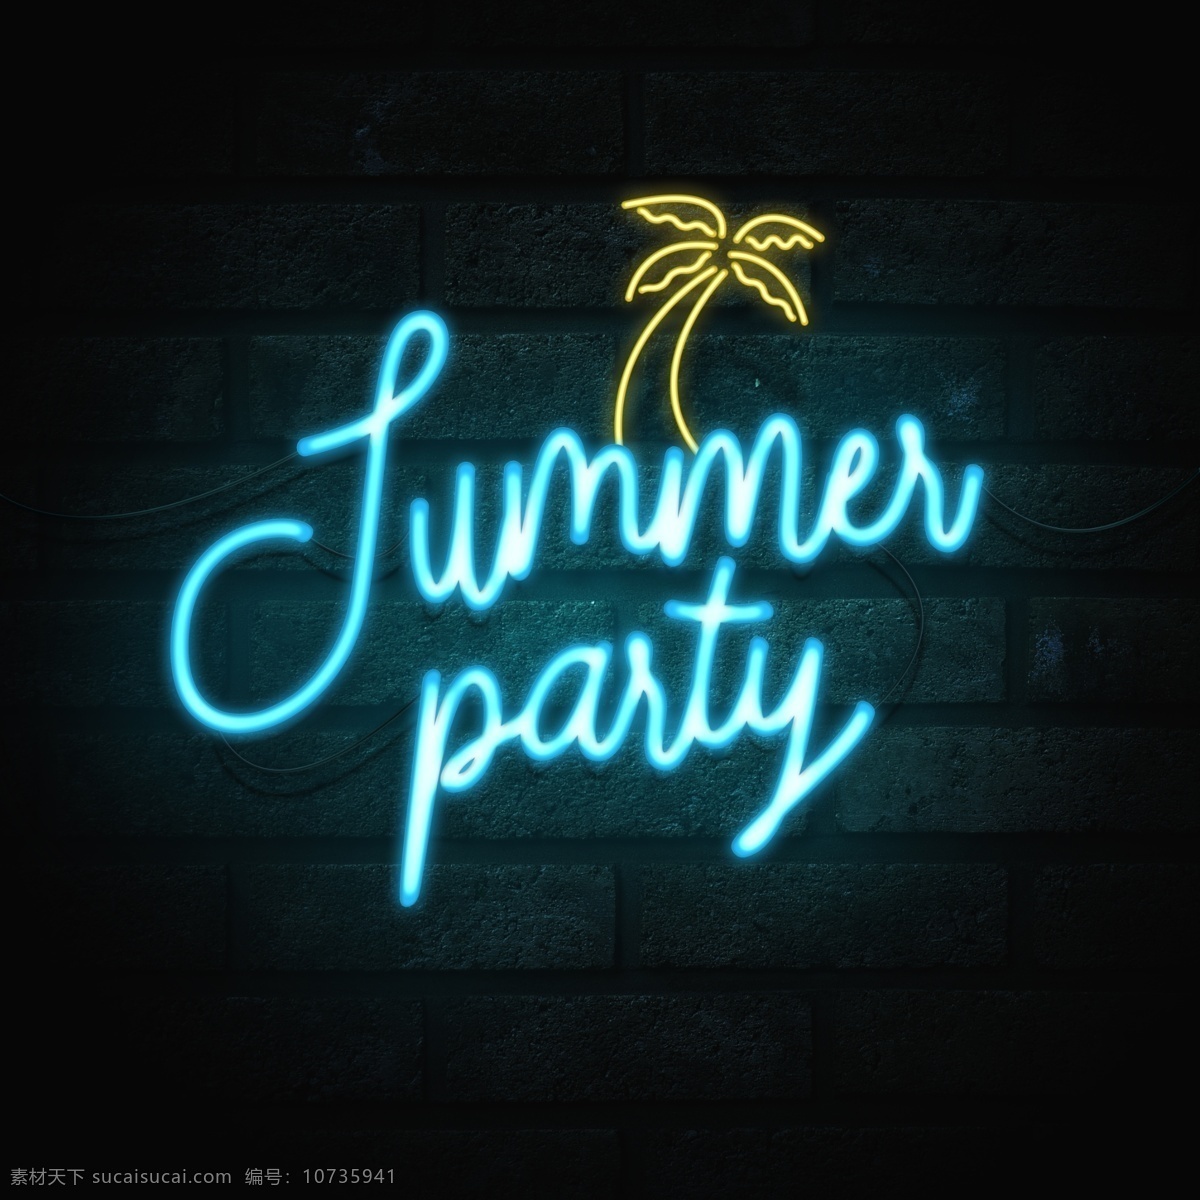 酒吧 发光 字 效 霓虹灯 素 聚会派对 活动海报 酒吧发光字效 夜景专题 设计素材 图源文件